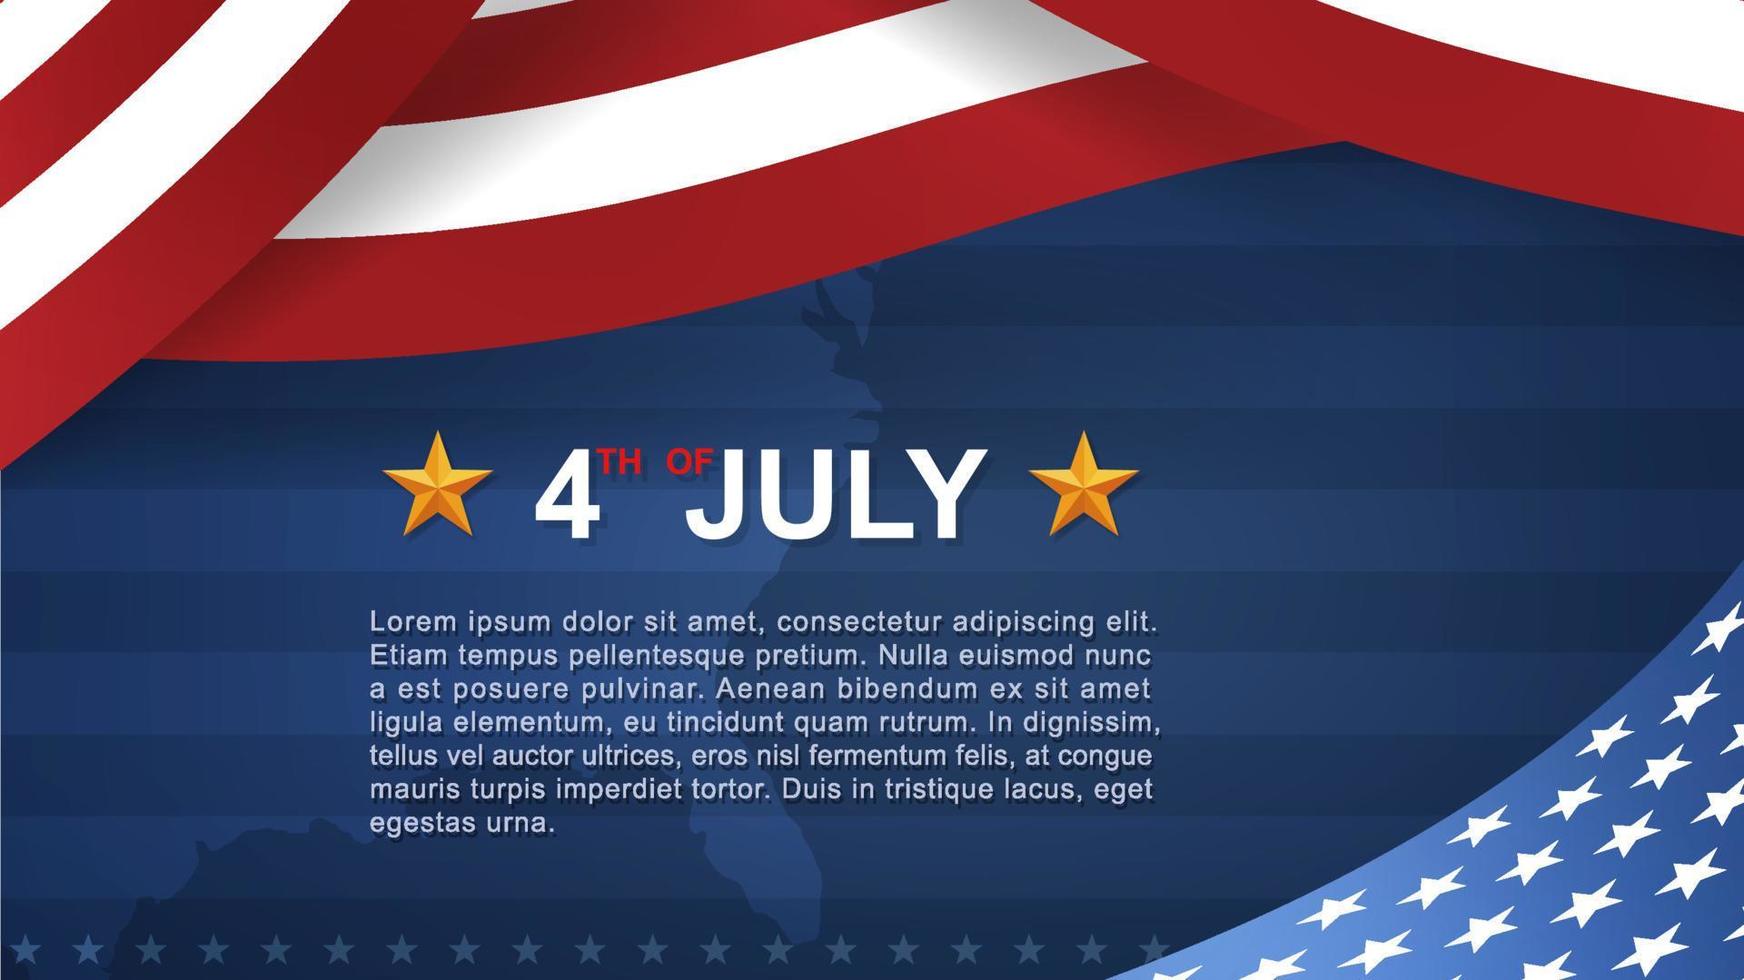 4. Juli Hintergrund für den Unabhängigkeitstag der Vereinigten Staaten von Amerika mit blauem Hintergrund und amerikanischer Flagge. Vektor-Illustration. vektor